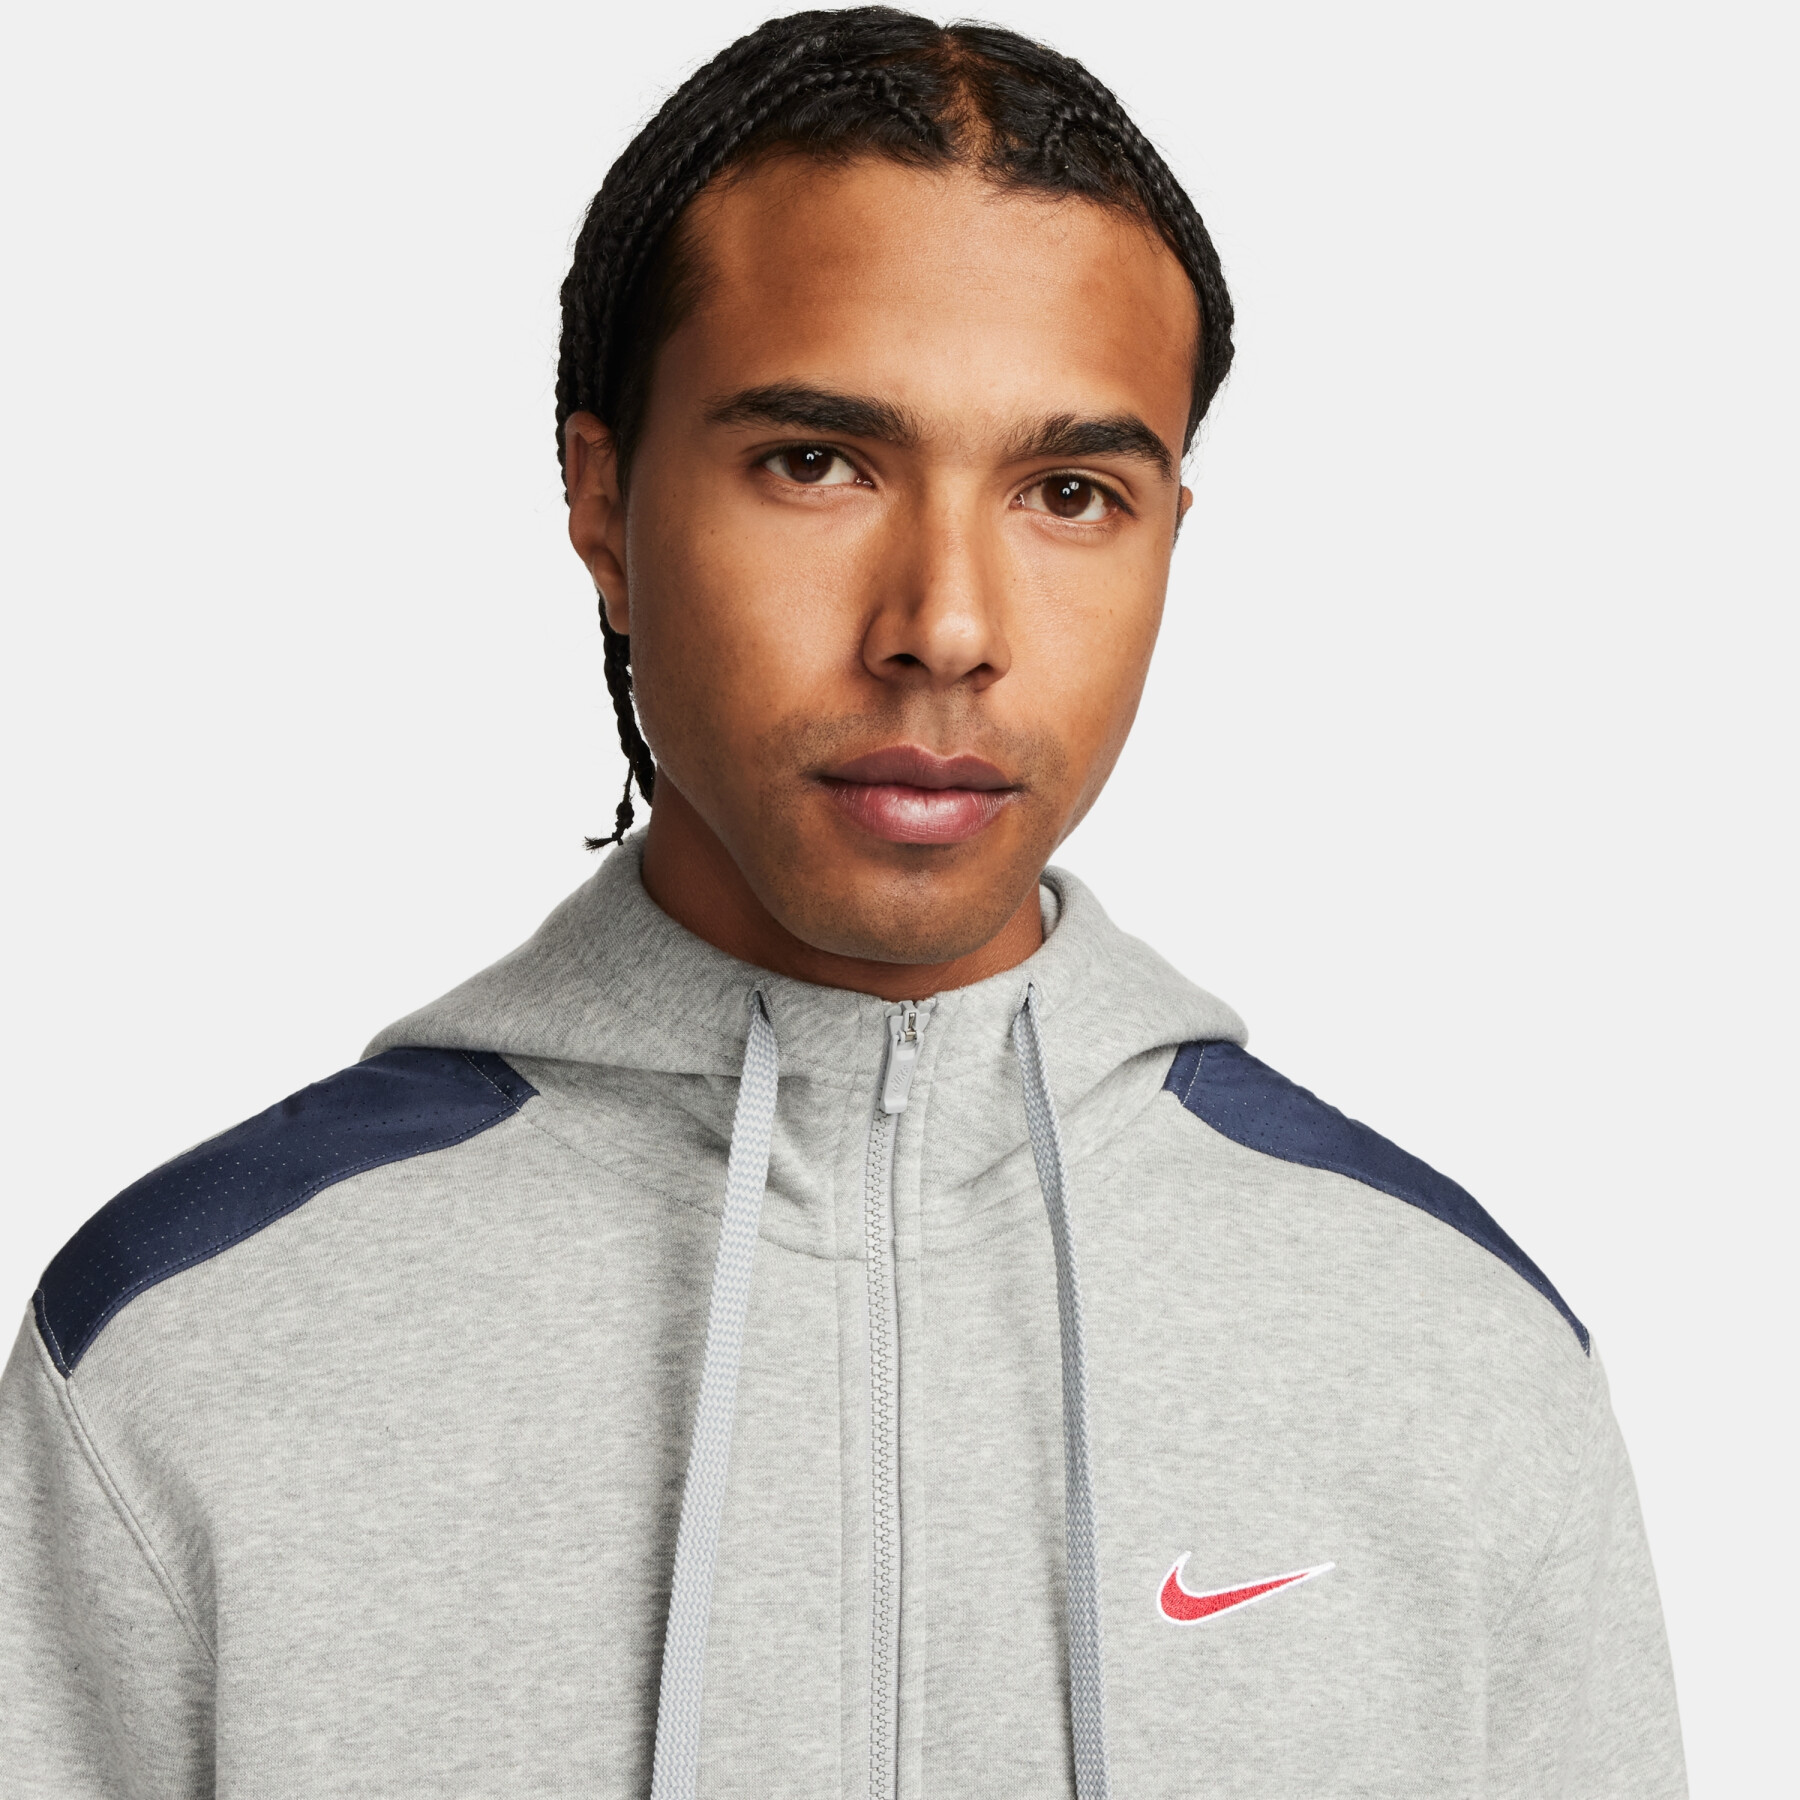 Kapuzenjacke Nike Fleece